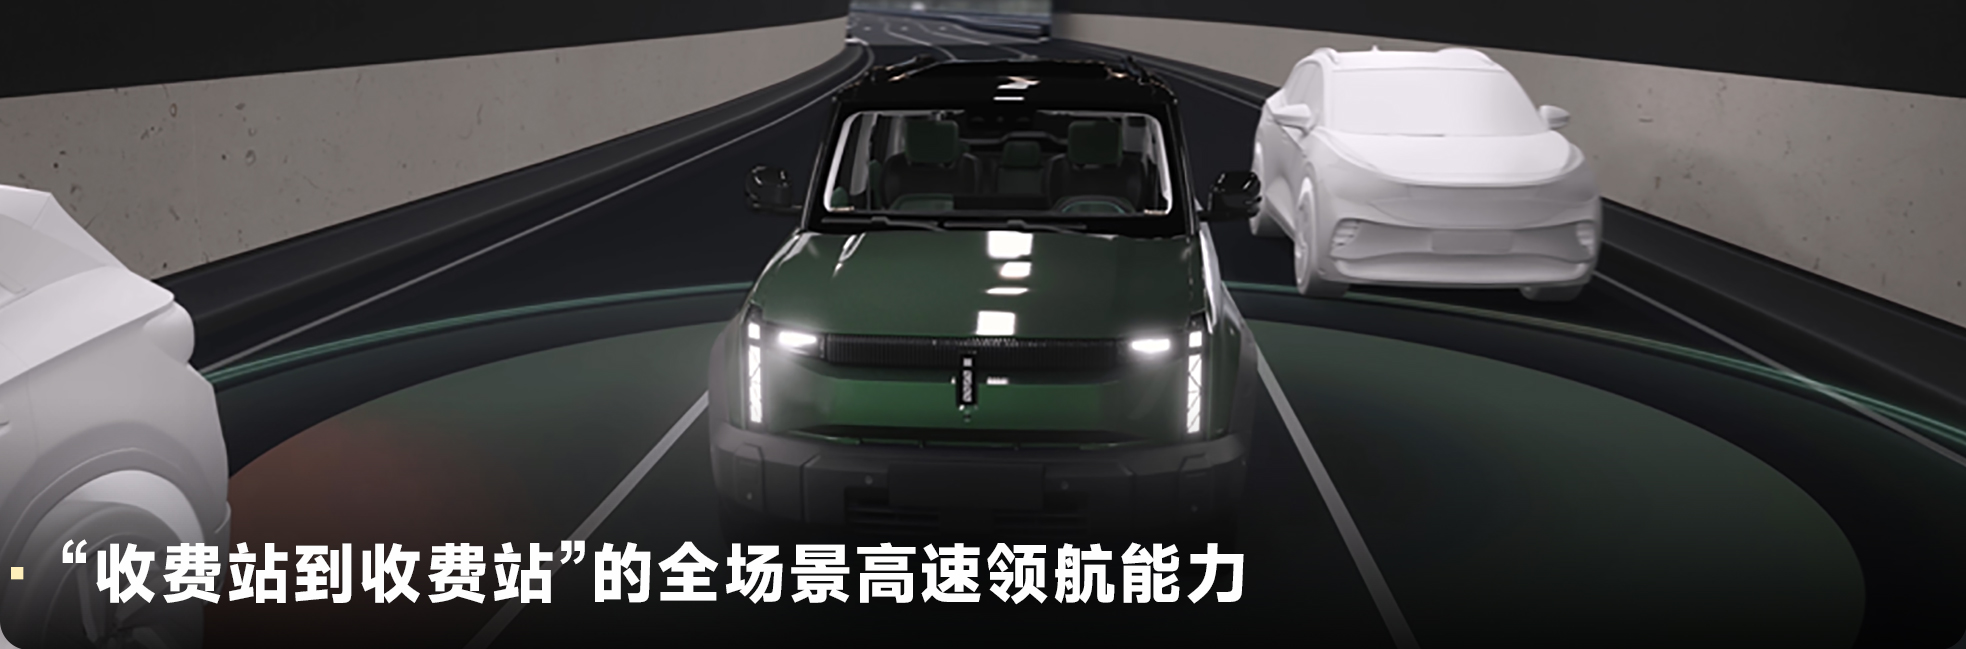 iCAR 03全新智驾版型L2++仿生纯视觉高阶智驾方案，高速领航驾享安全